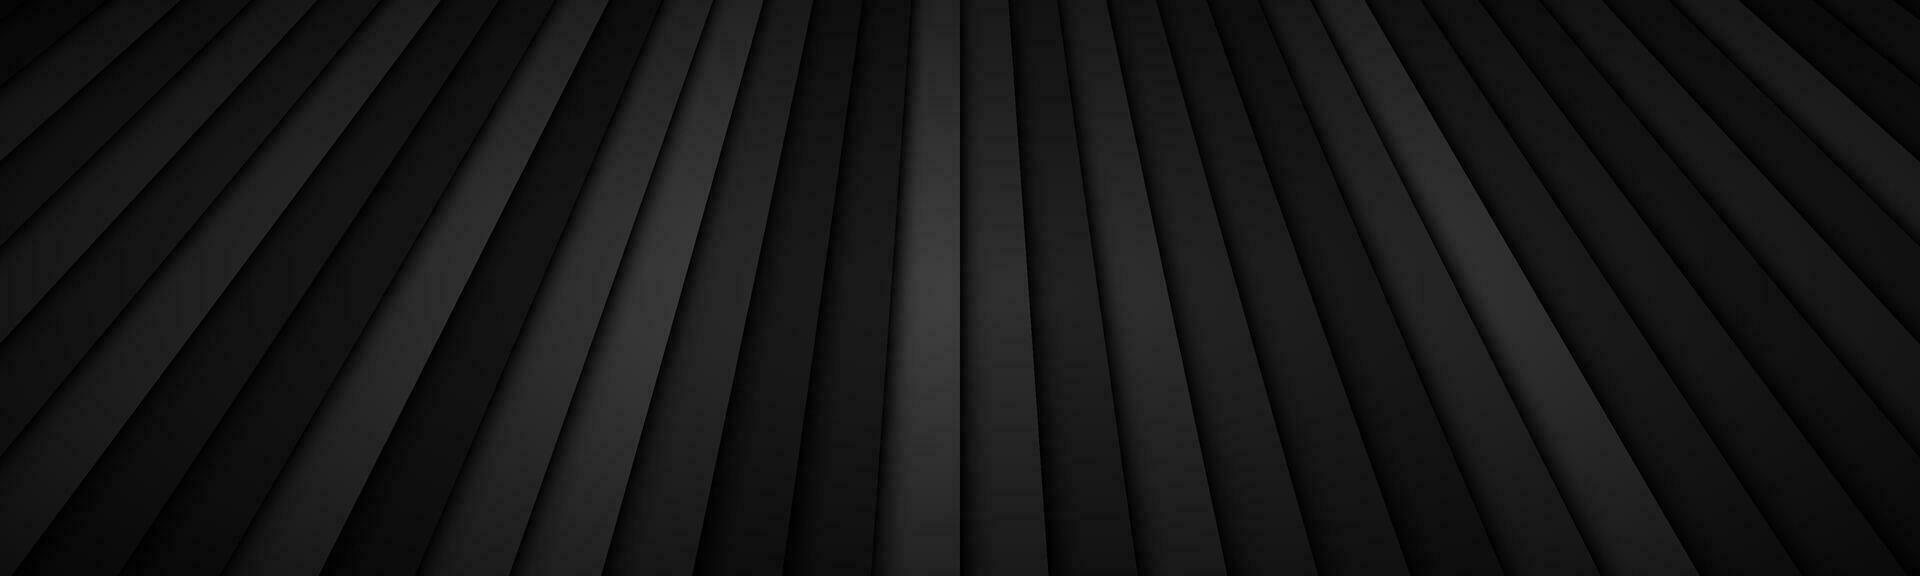 abstrakter Stripe-Header mit verschiedenen Transparenzen. schwarzer metallischer geometrischer Hintergrund mit dunklem Farbverlauf. einfaches Banner vektor